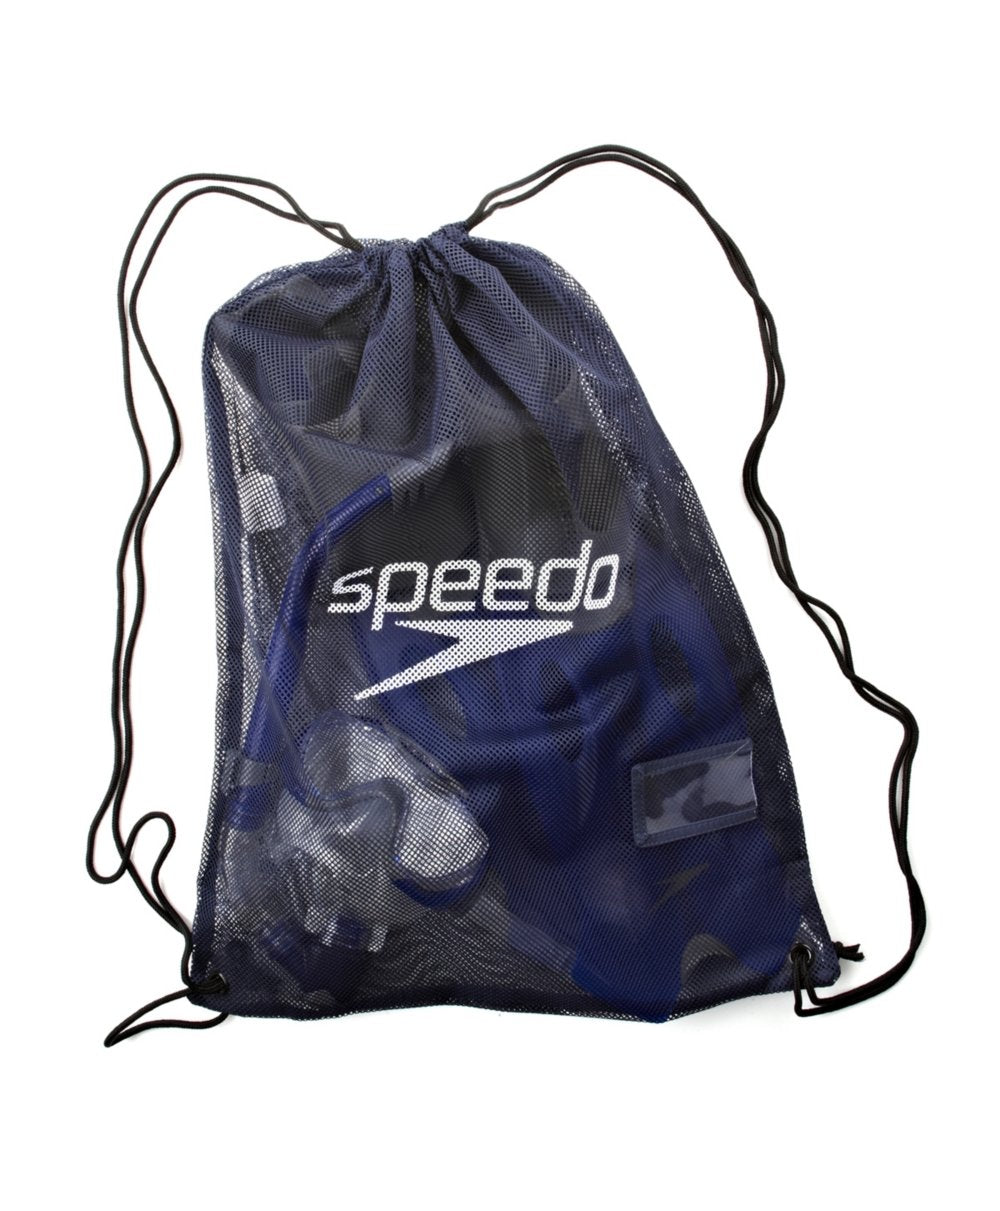 Speedo Unisex Equipment Mesh Bag 35 Litre (pack of 1)